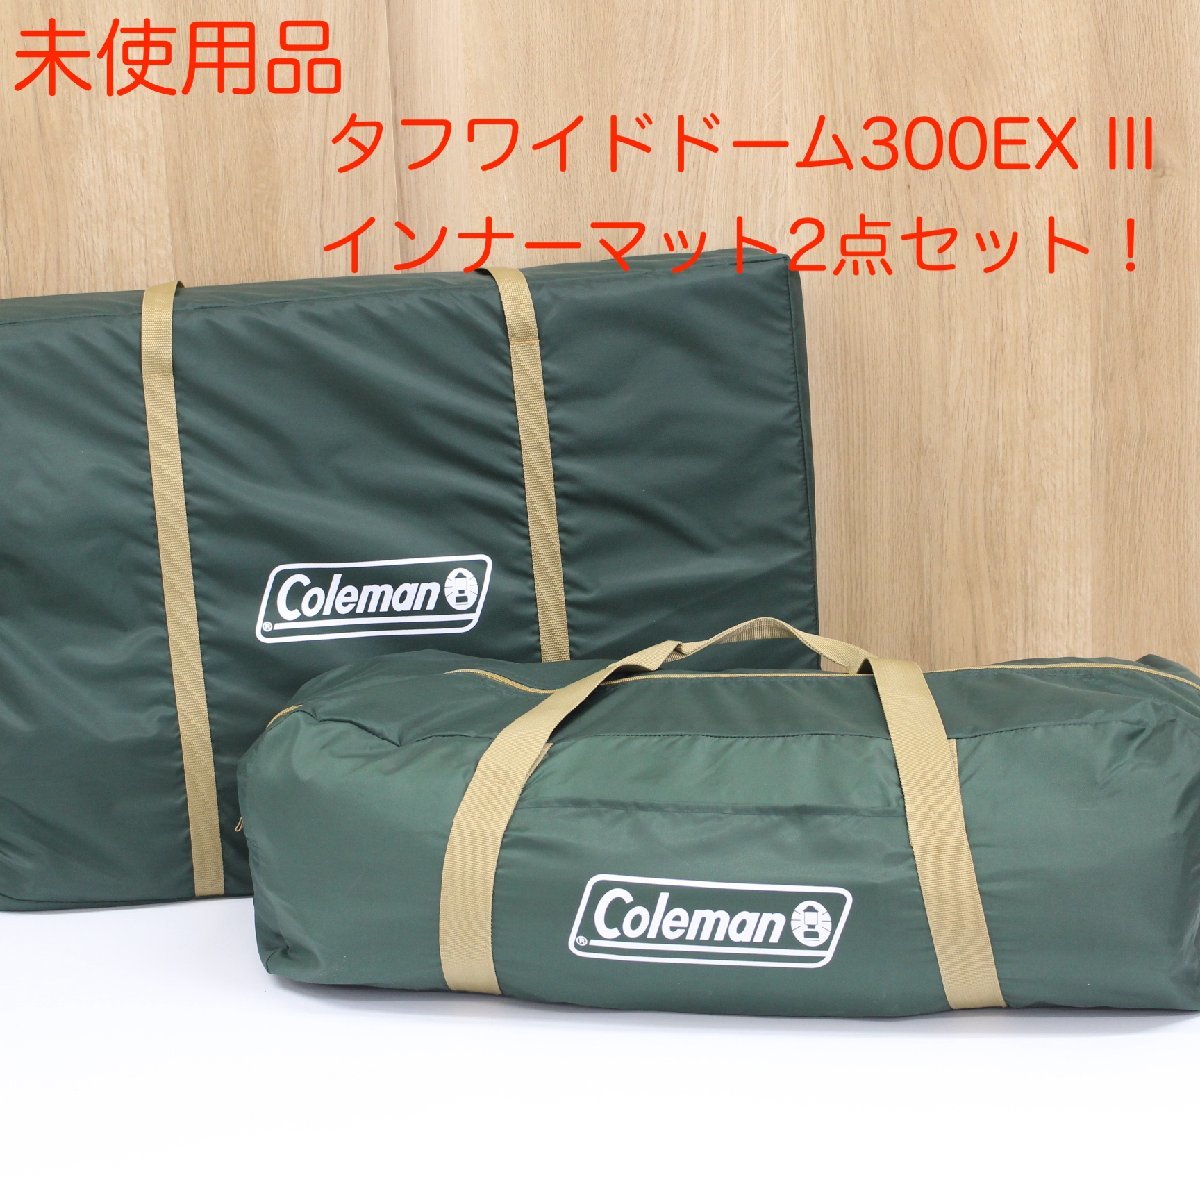 東京都豊島区にて コールマン テント インナーマット 2点セット タフワイドドーム300EX  を出張買取させて頂きました。